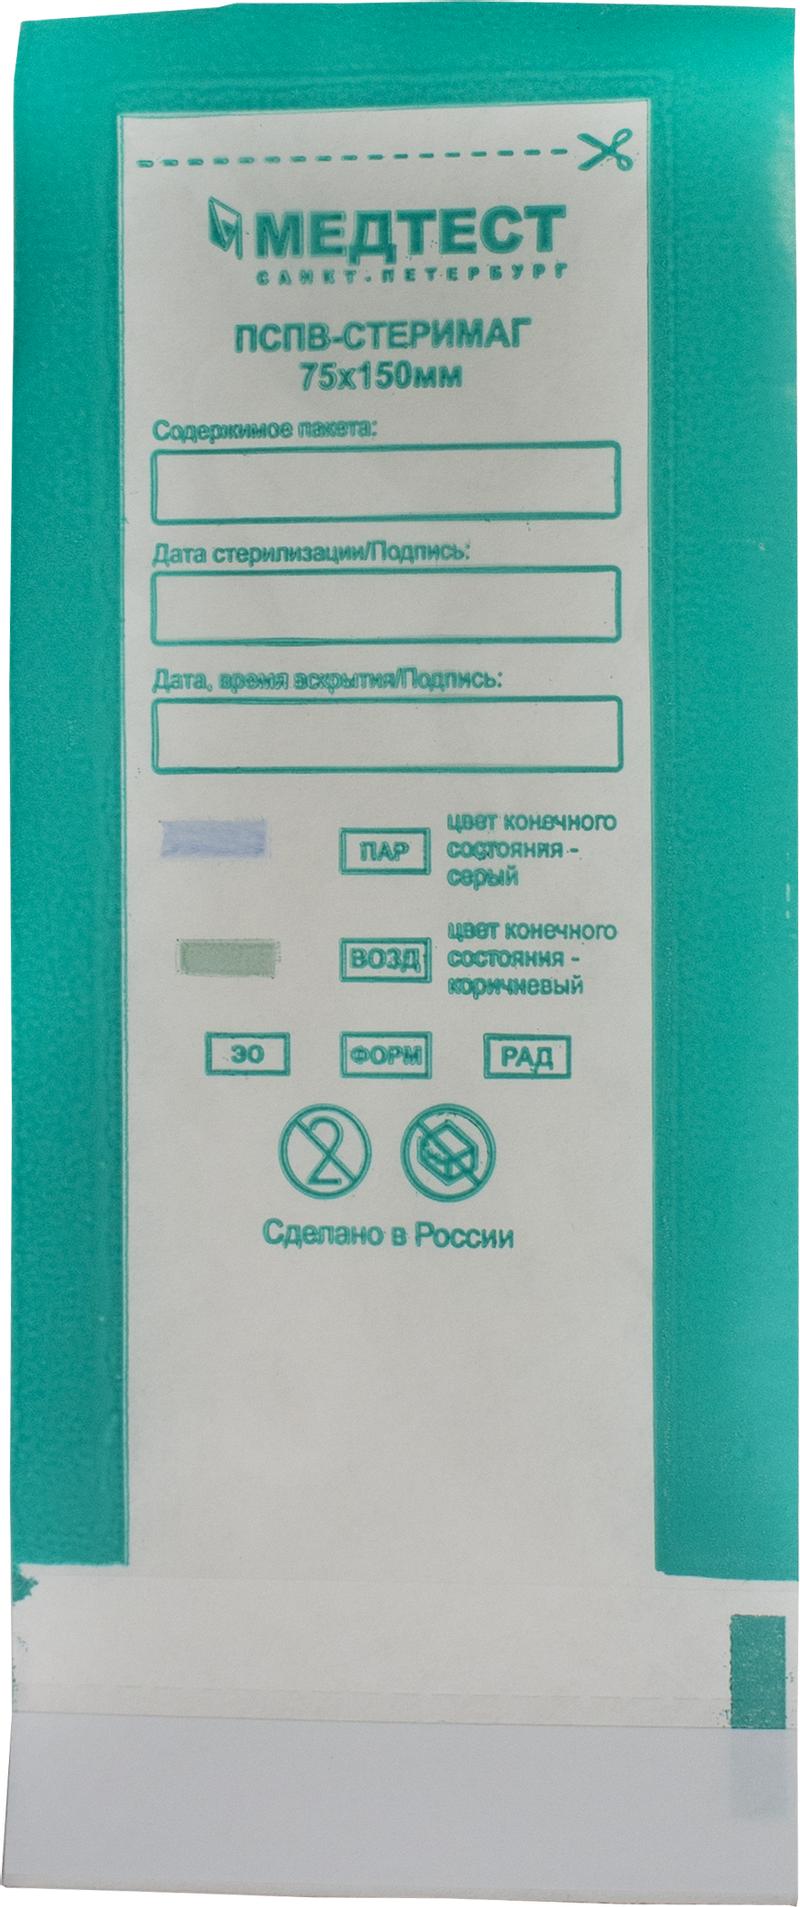 Пакет для стерилизации 75 х 150 мм /ПСПВ Стеримаг